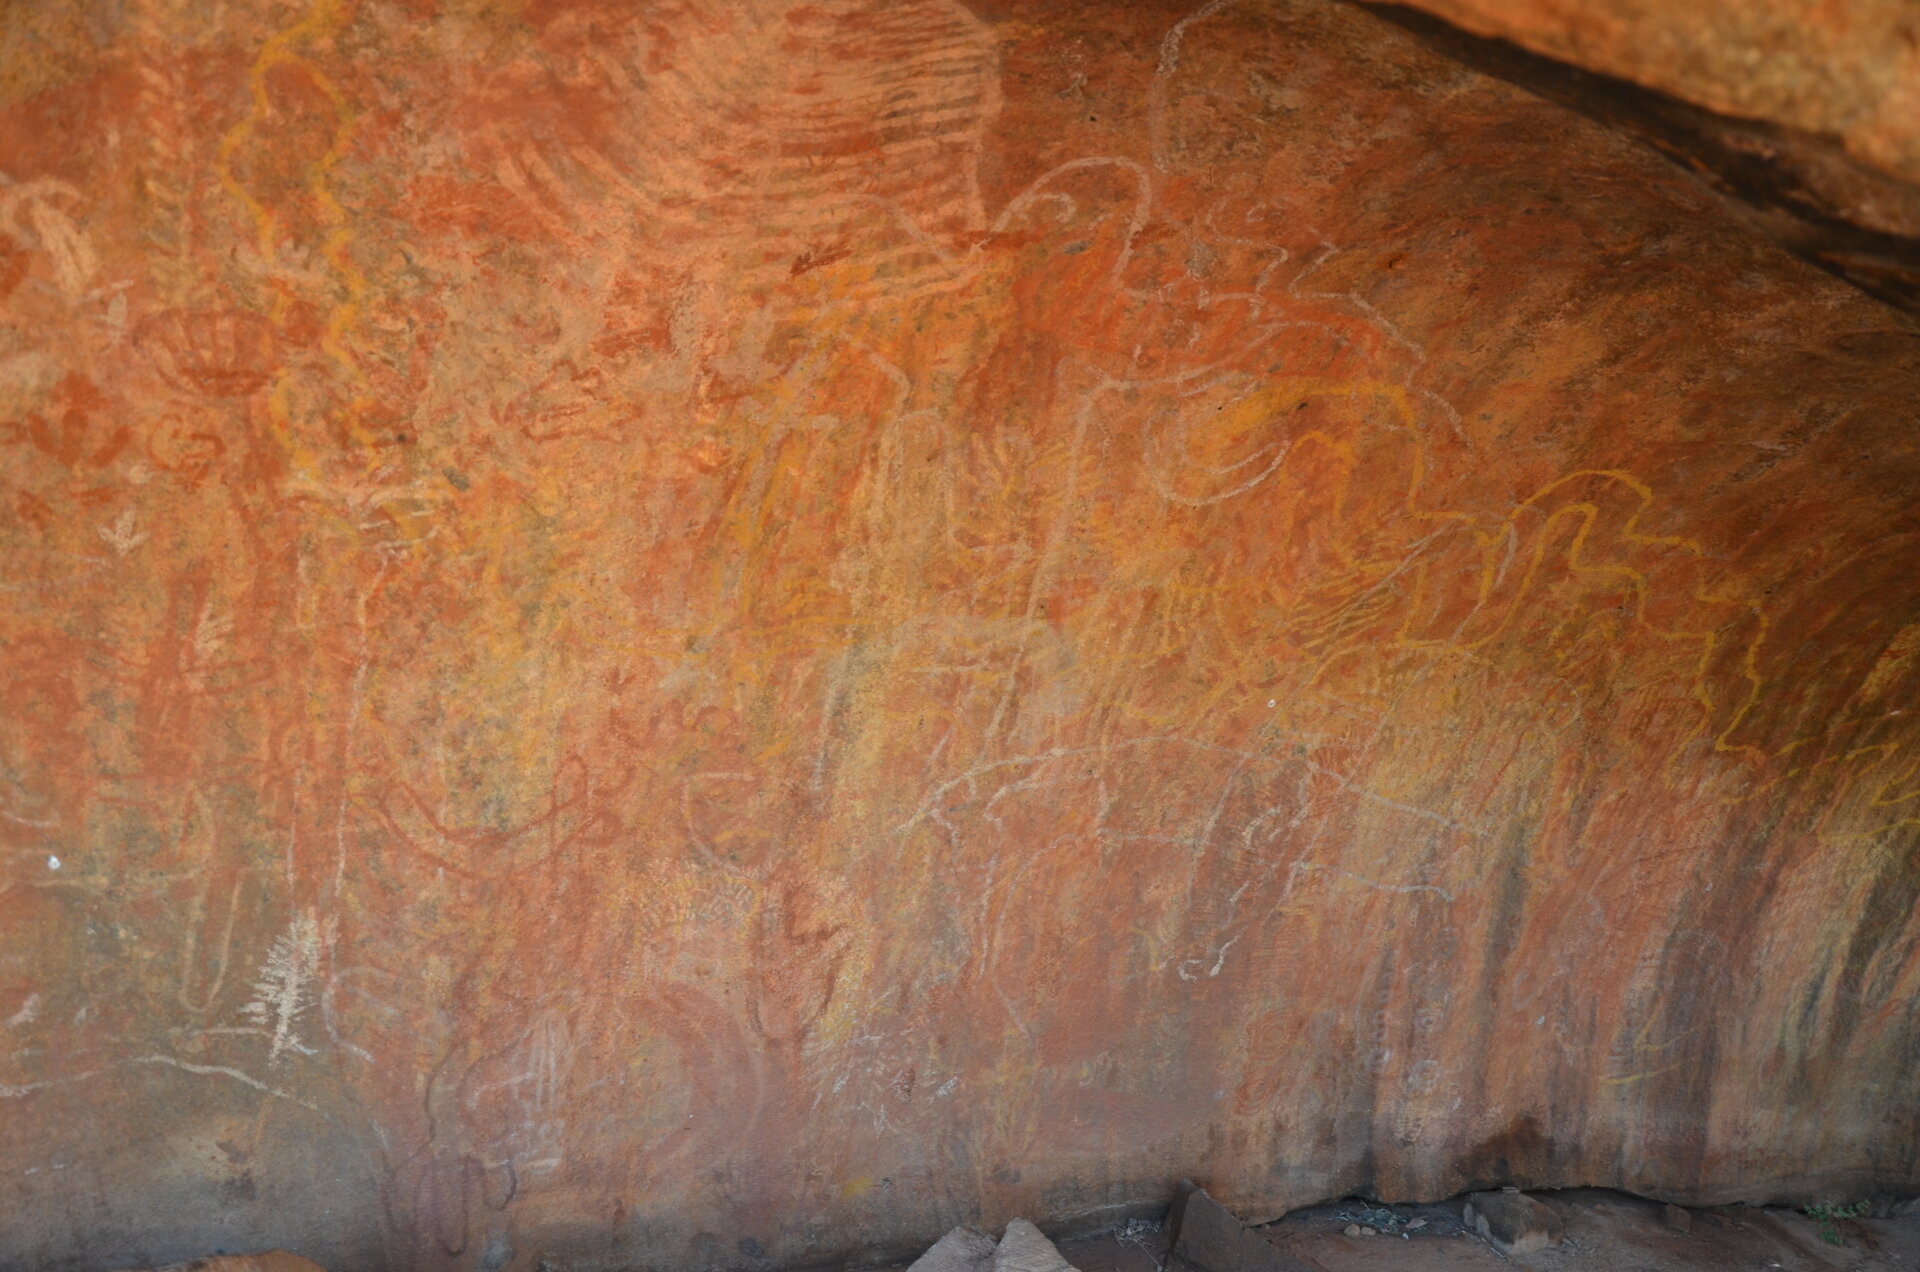 Aboriginal paintings at Uluru